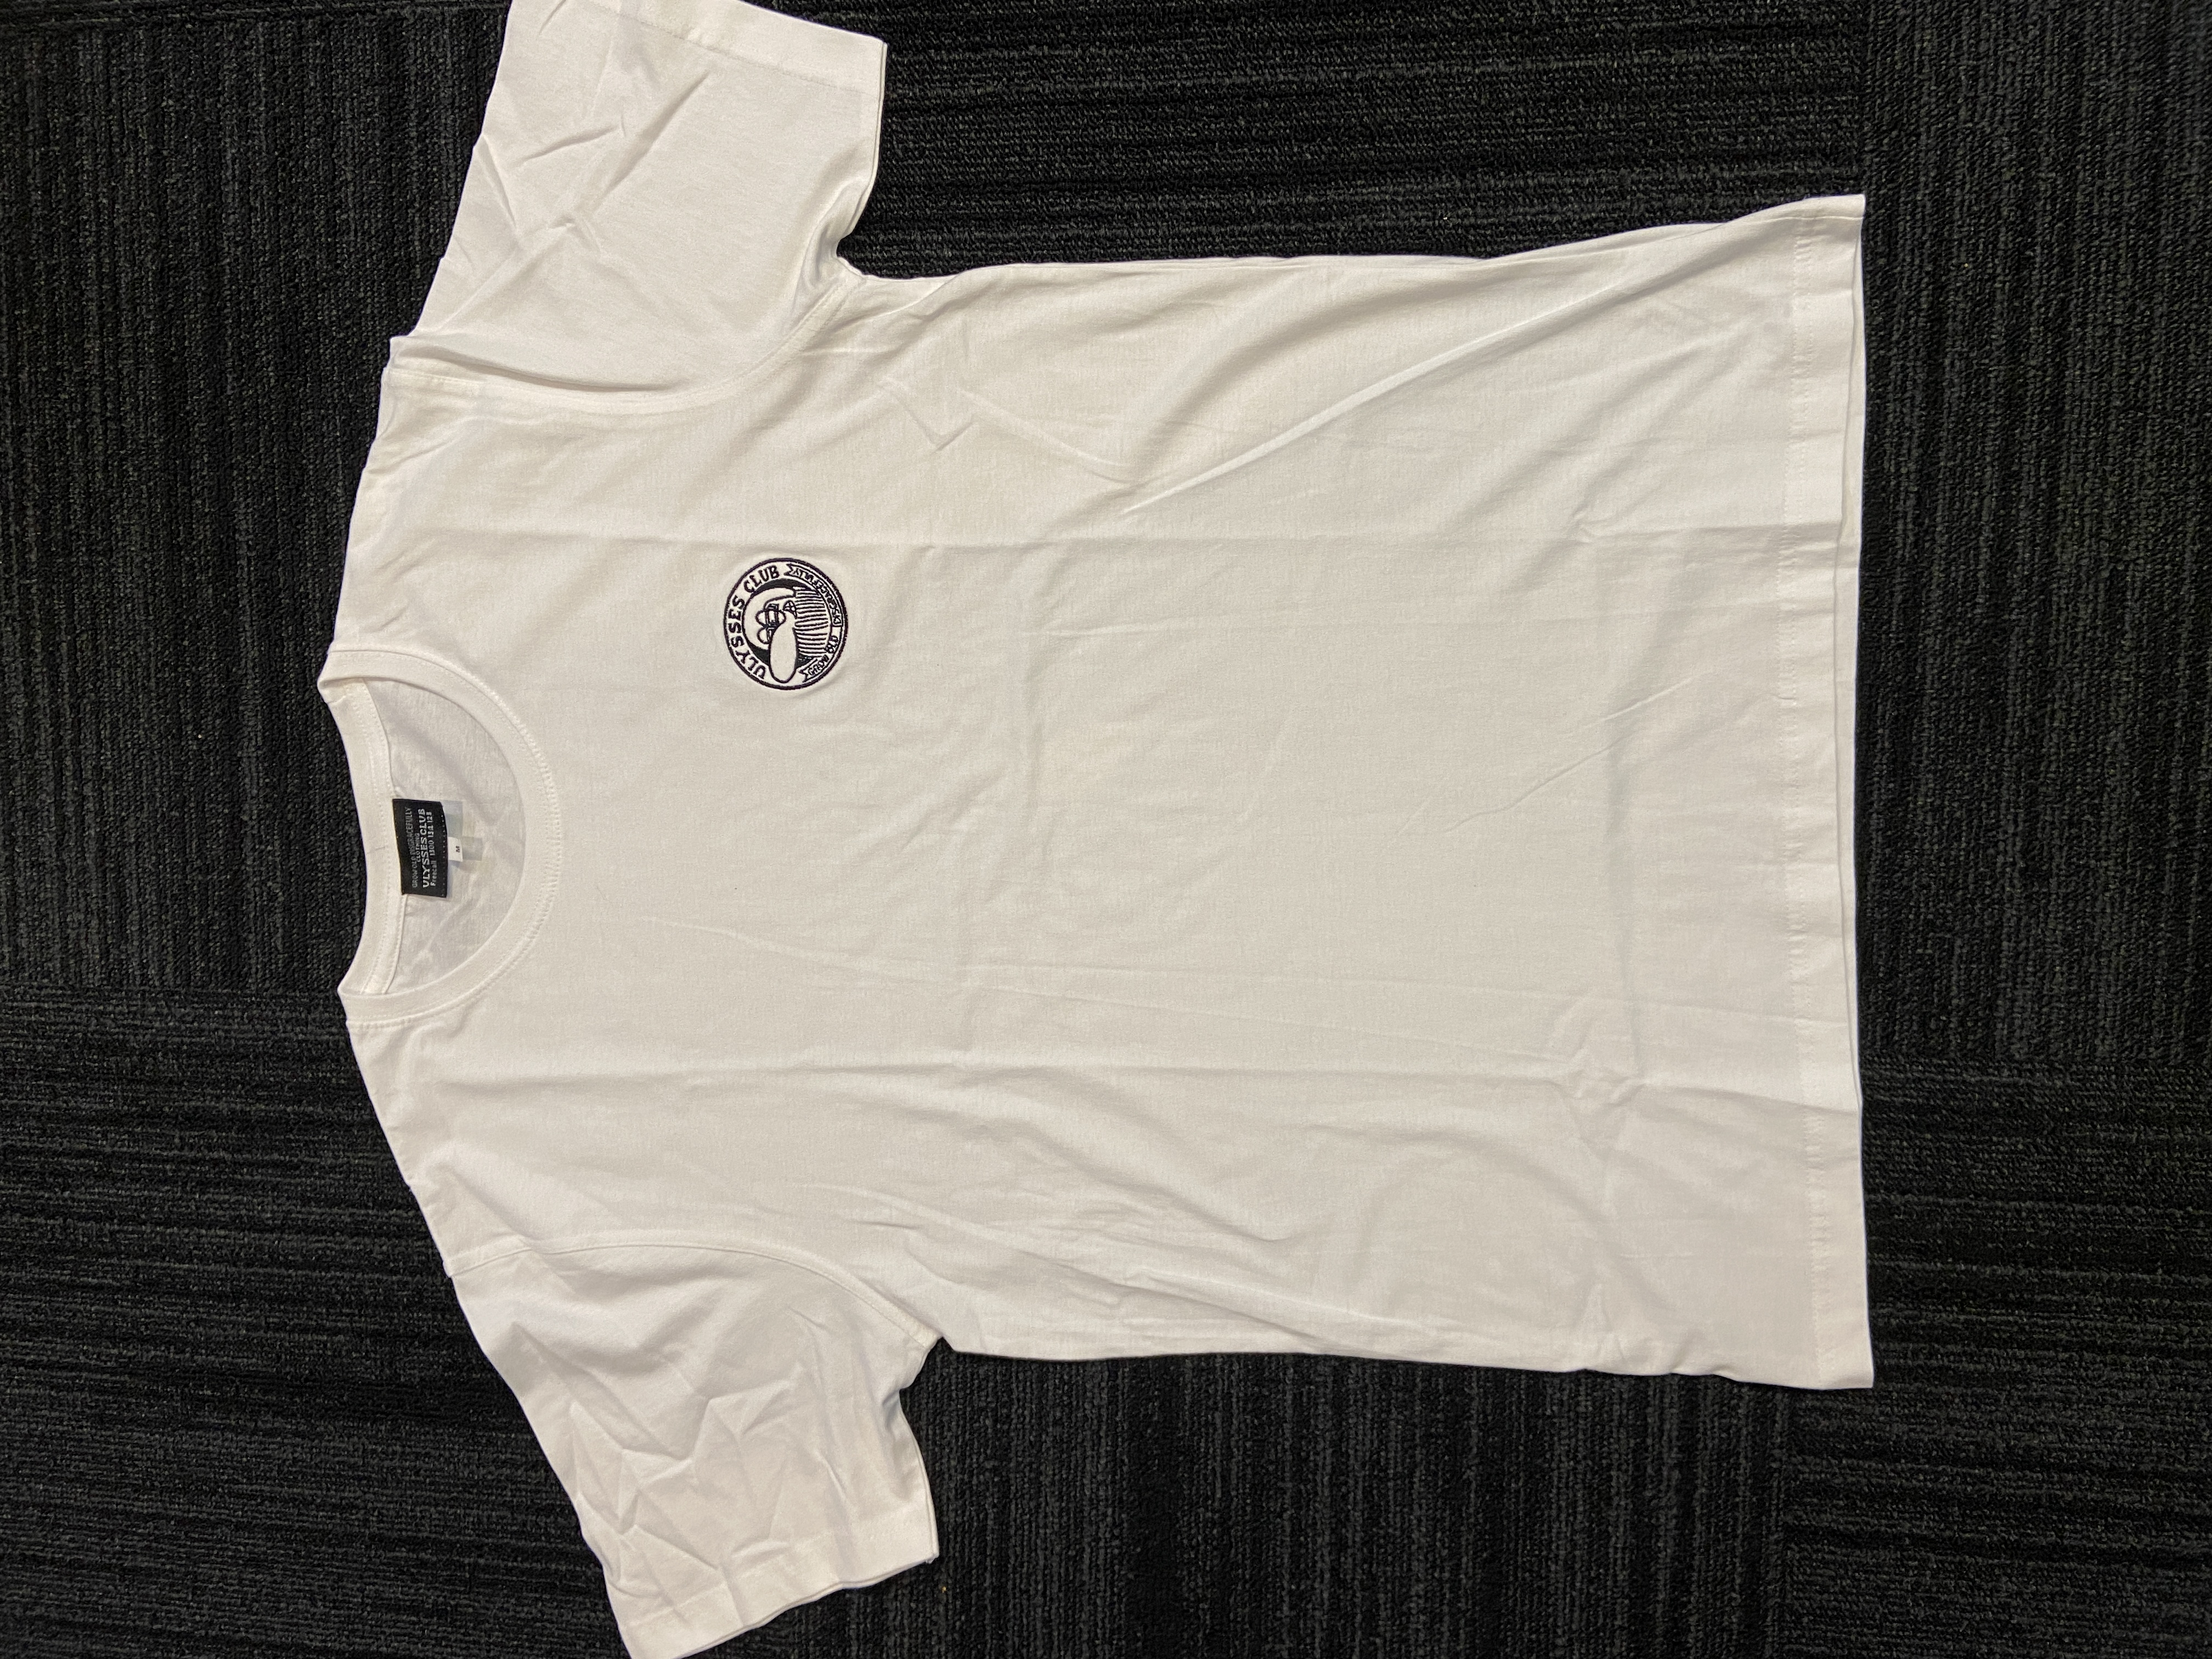 T-Shirt Unisex - Short Sleeve - White - Size 2XL, 63.5 cm